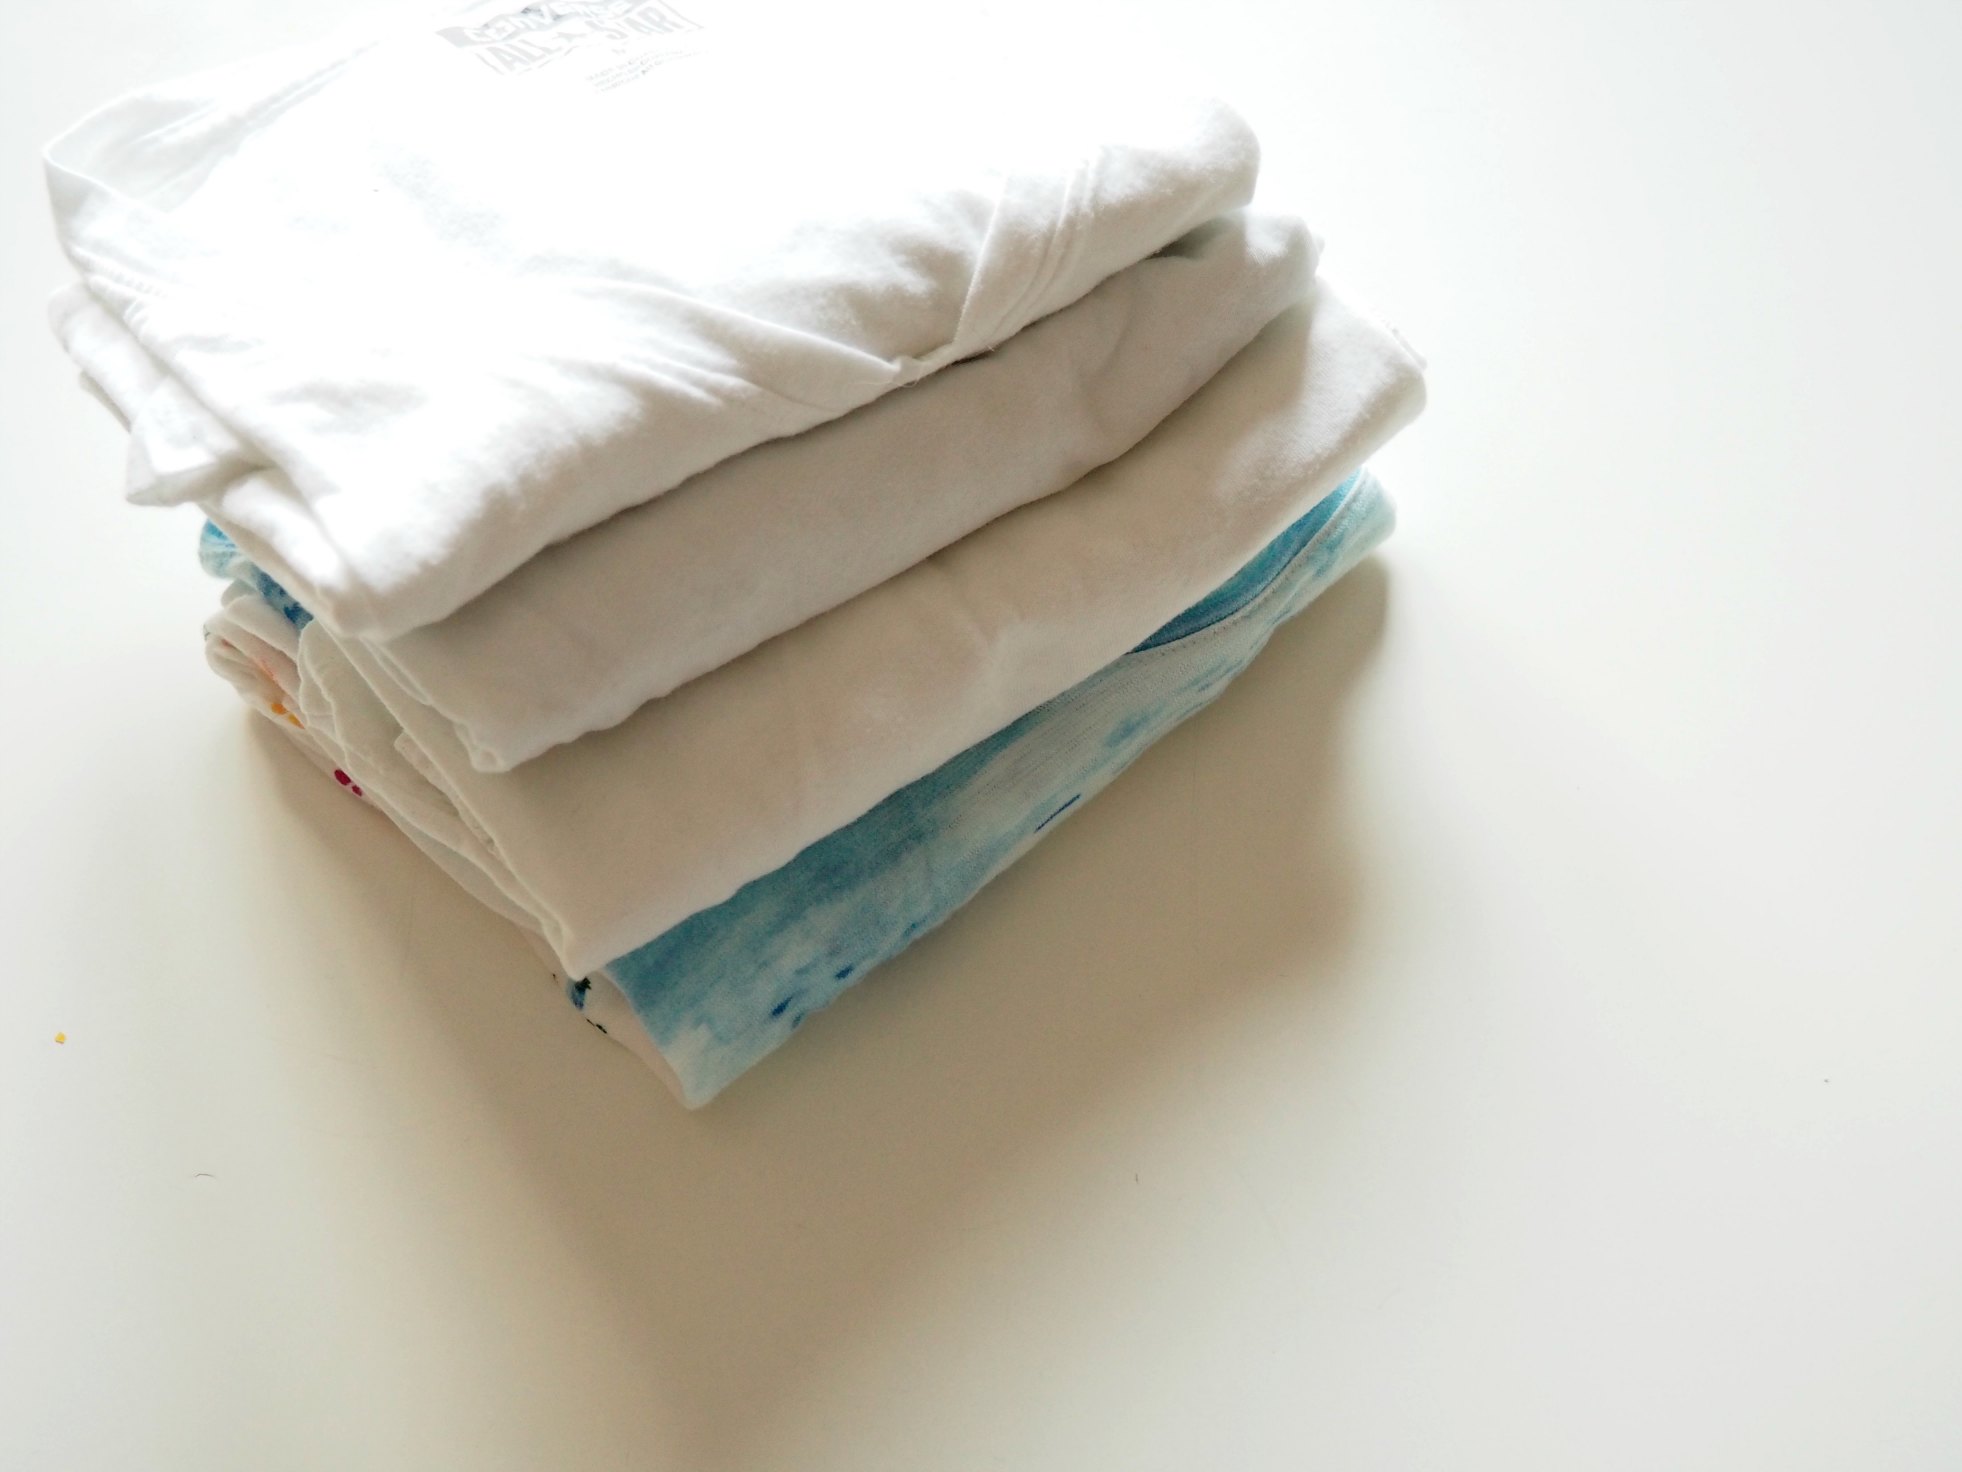 T-Shirt zusammenlegen in Perfektion – was kann das Faltbrett?